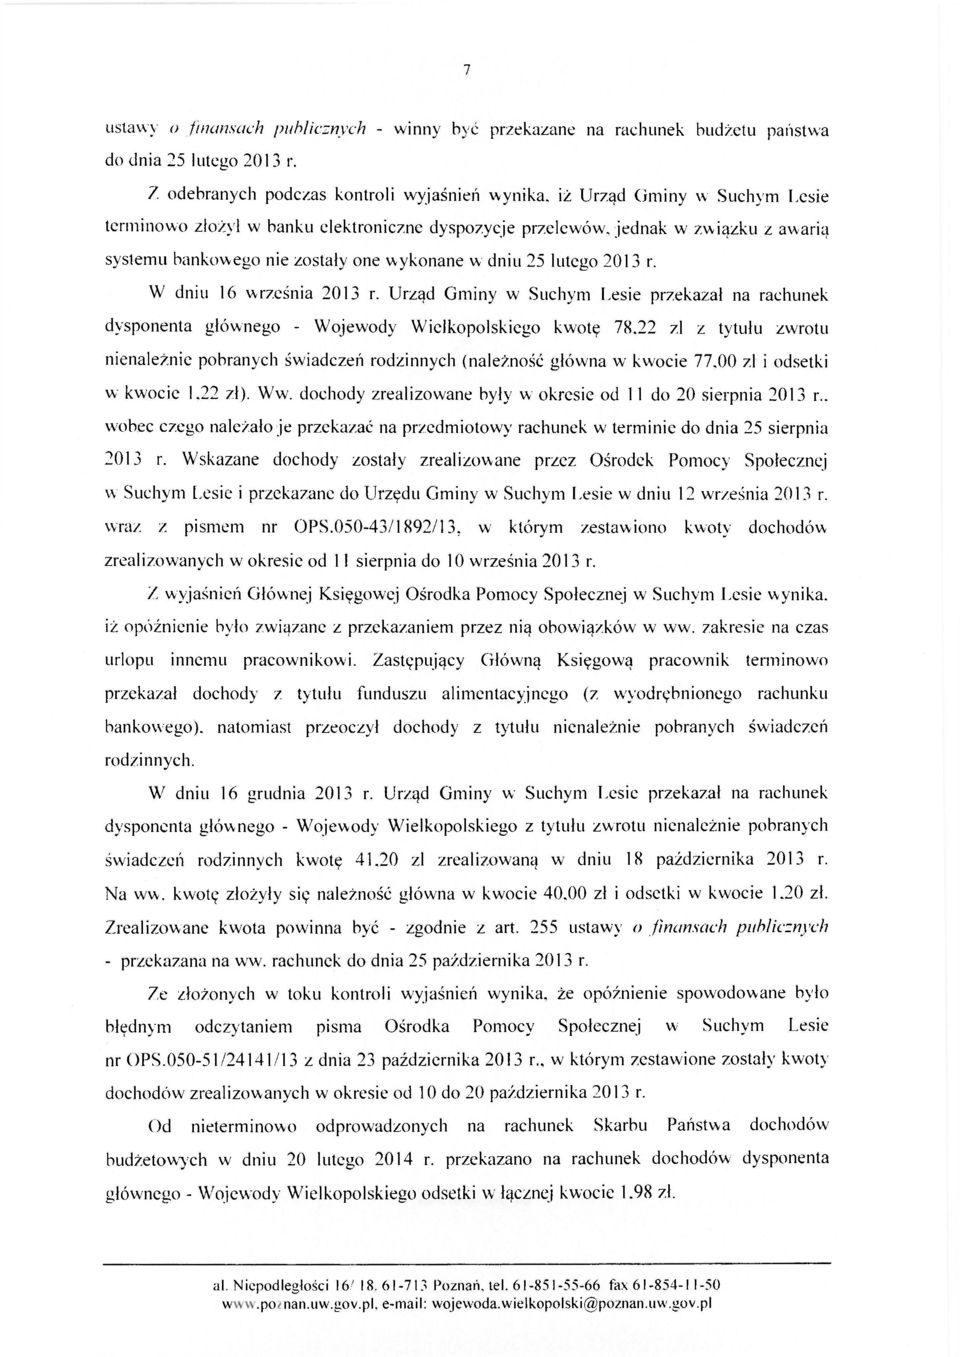 wykonane w dniu 25 lutego 2013 r. W dniu 16 września 2013 r. Urząd Gminy w Suchym Lesie przekazał na rachunek dysponenta głównego - Wojewody Wielkopolskiego kwotę 78.